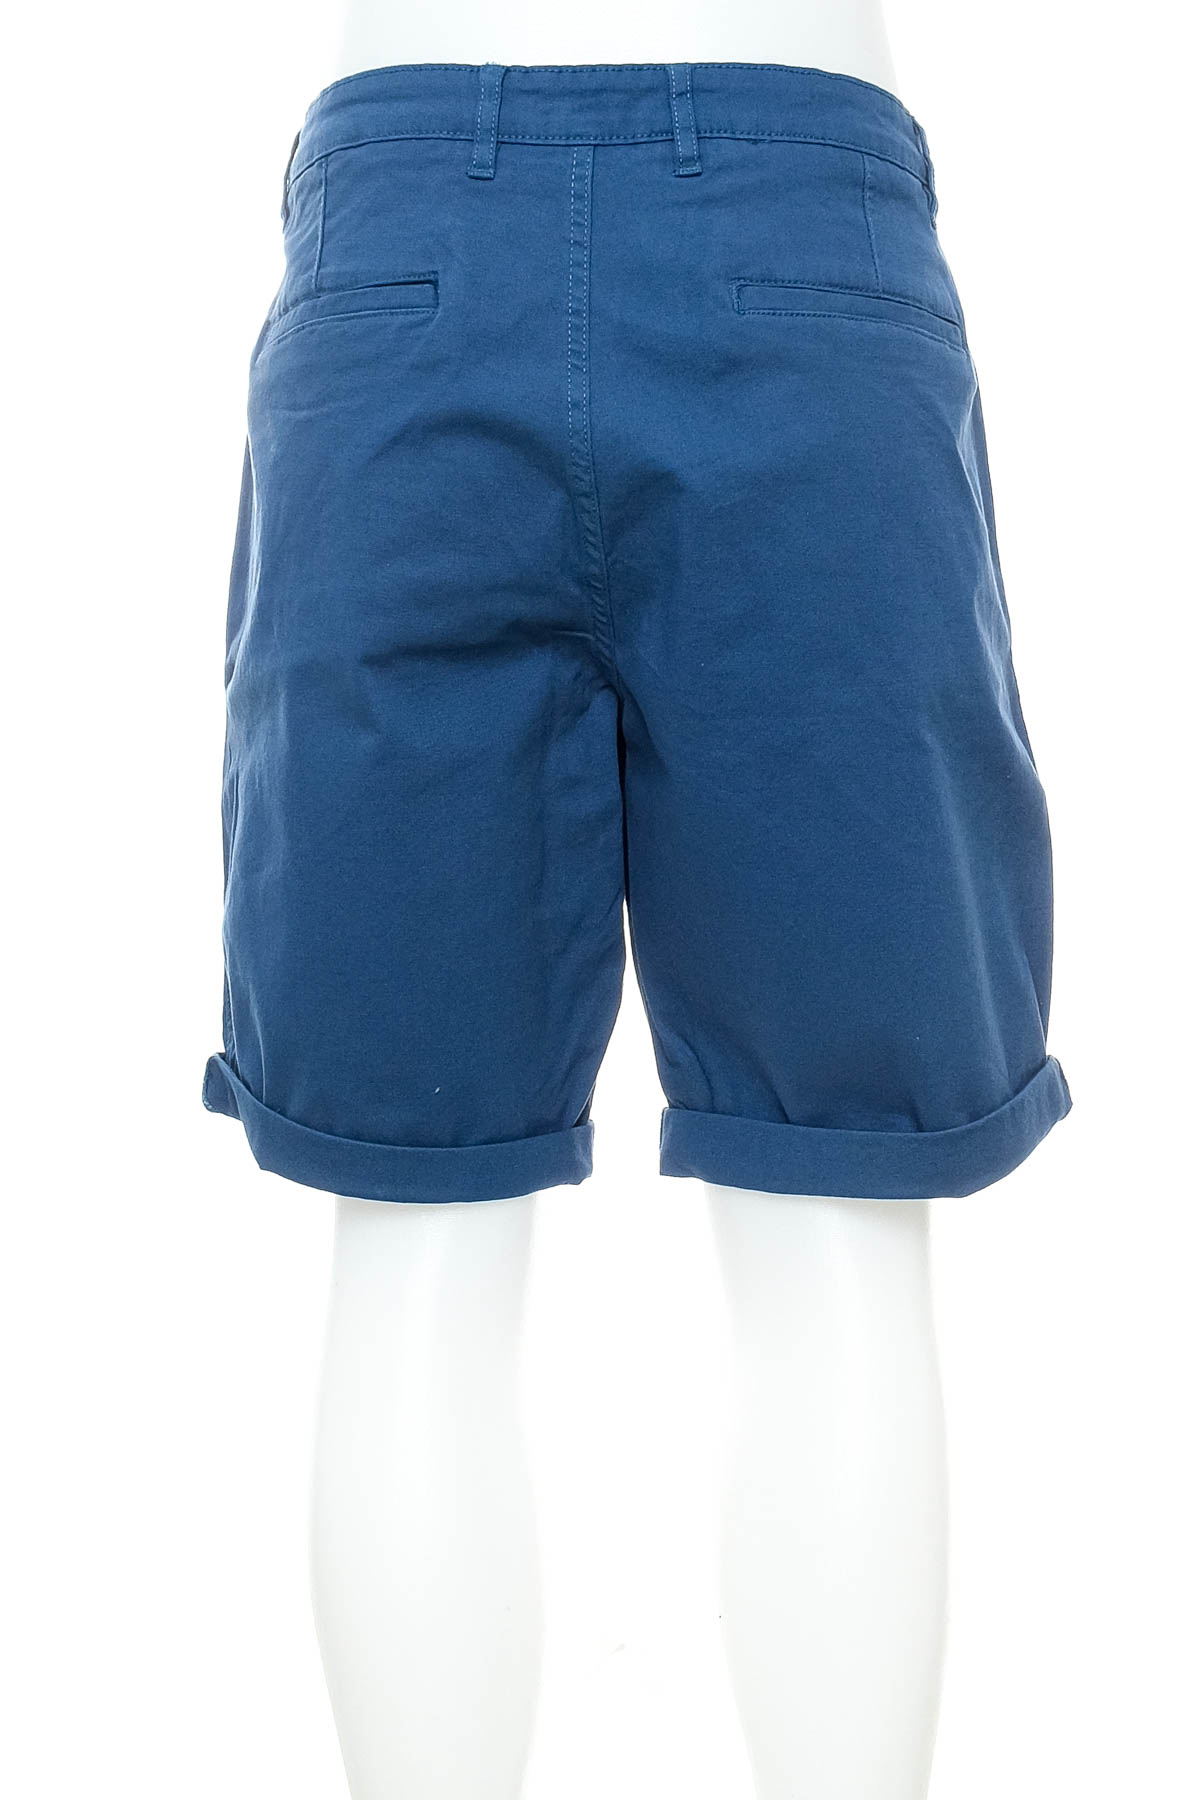 Men's shorts - Celio* - 1